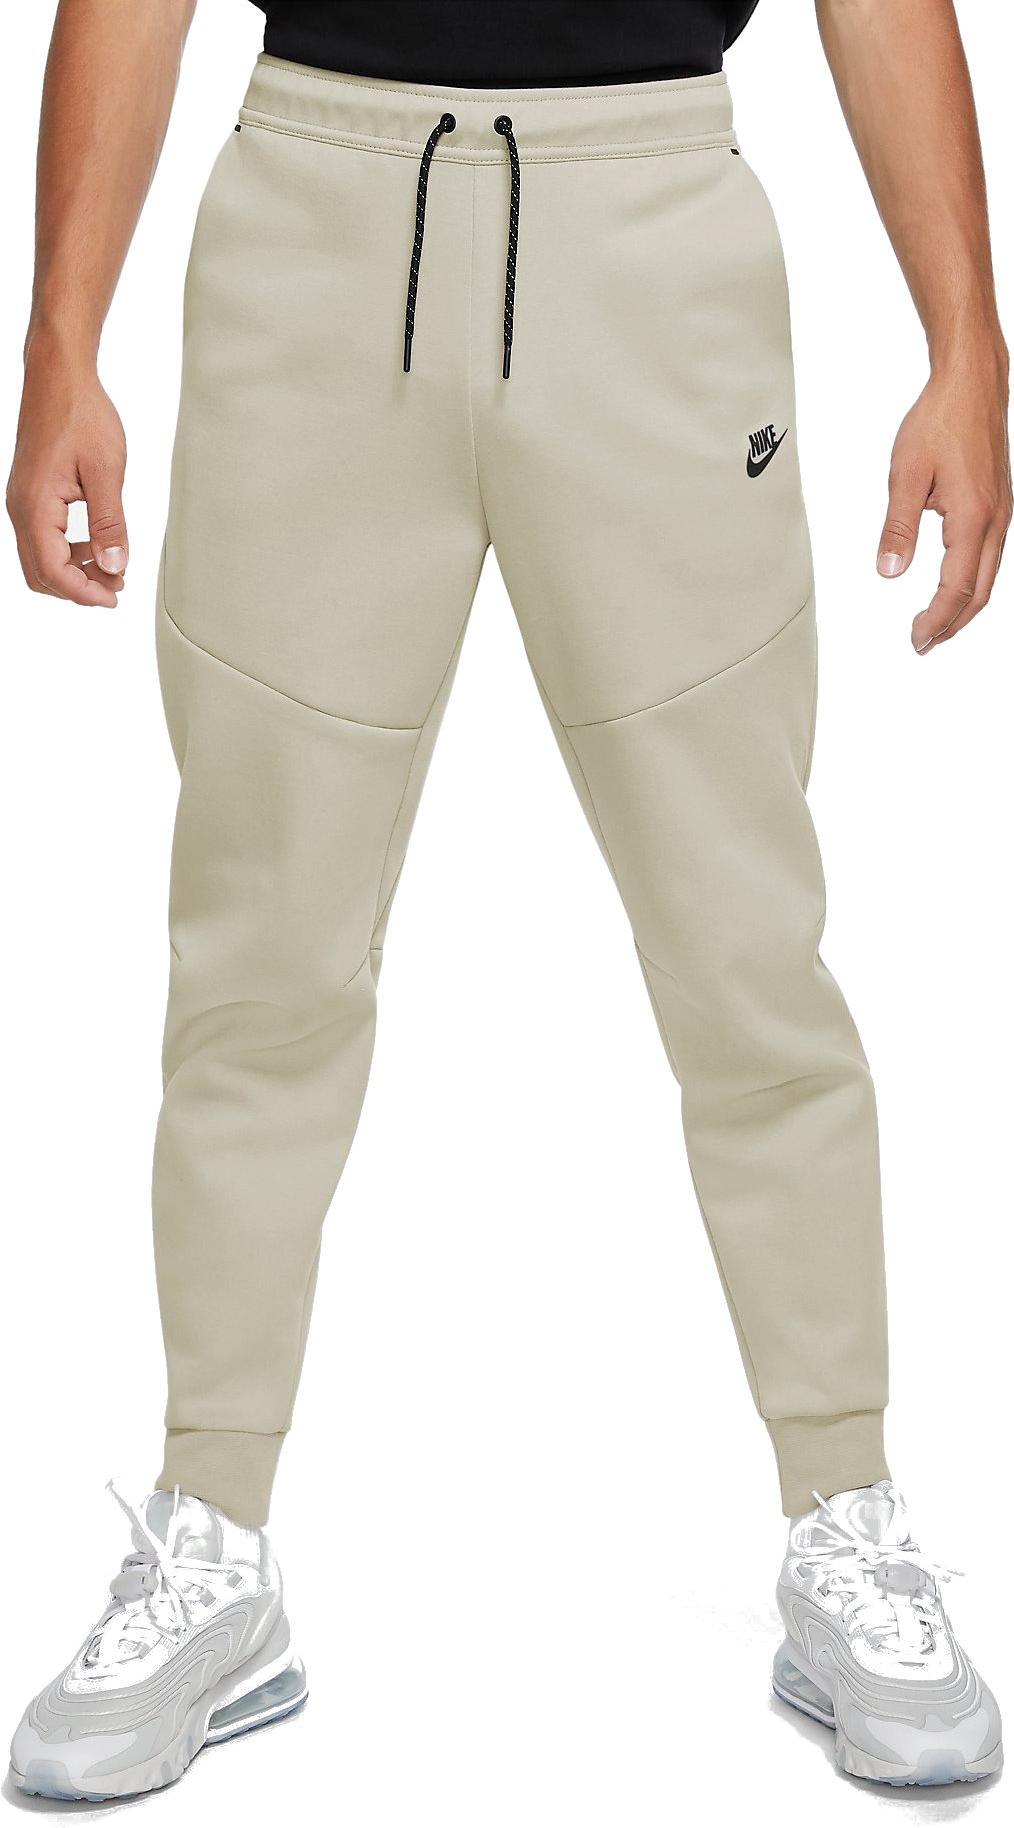 Pantalons Nike M NSW TECH FLEECE PANTS - 11teamsports.fr